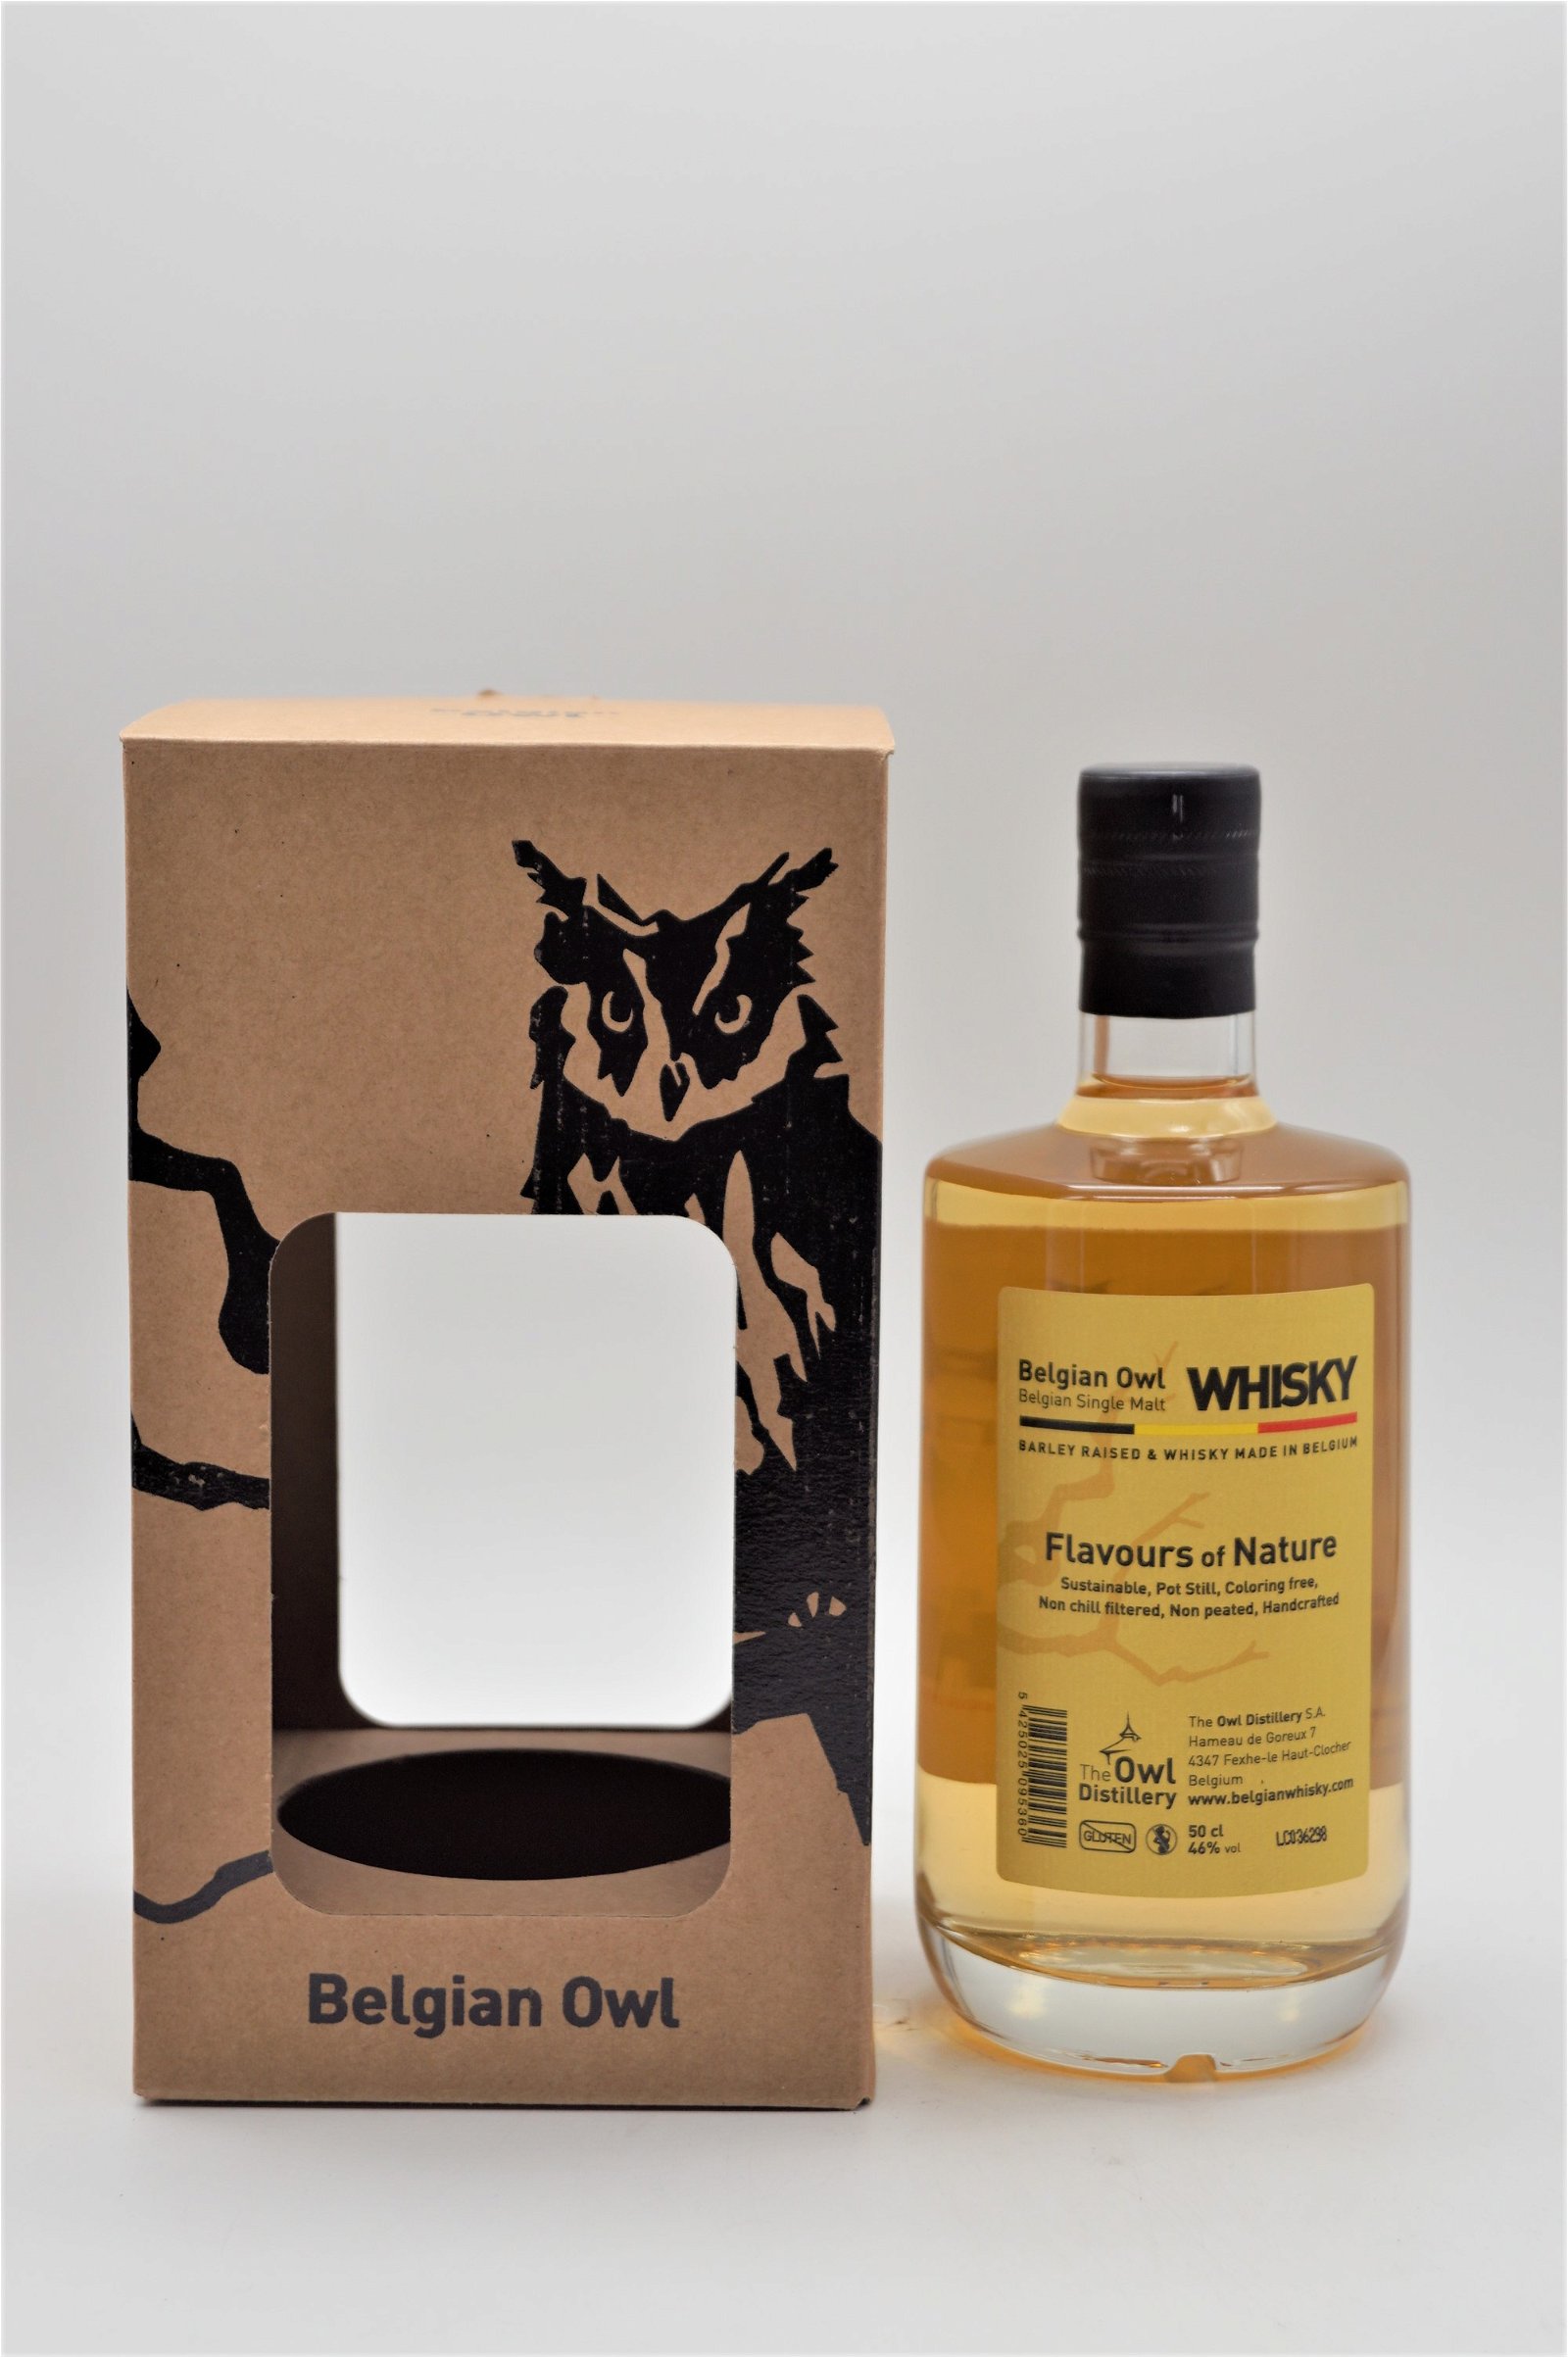 Belgian Owl Belgian Single Malt Whisky